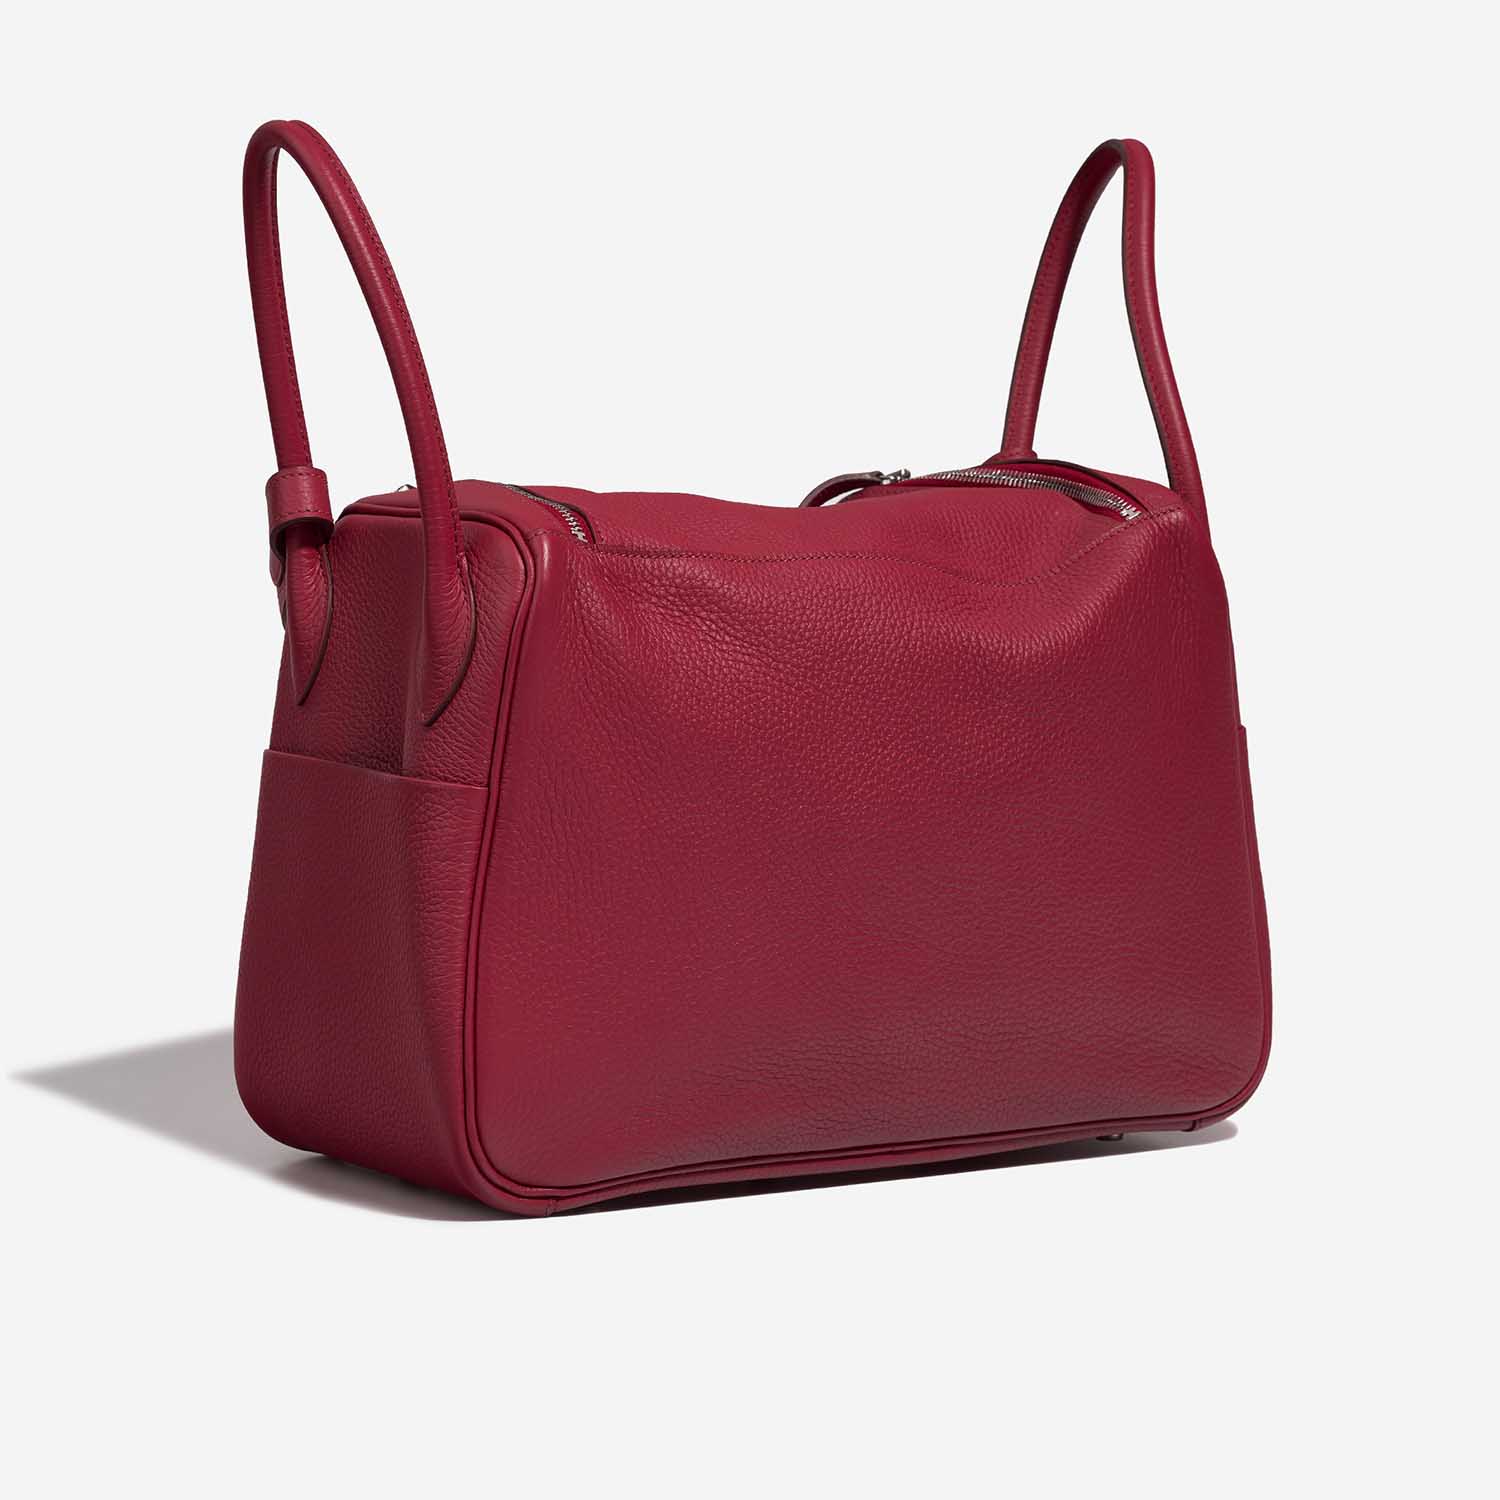 Hermès Lindy 34 Rubis Side Back | Verkaufen Sie Ihre Designer-Tasche auf Saclab.com